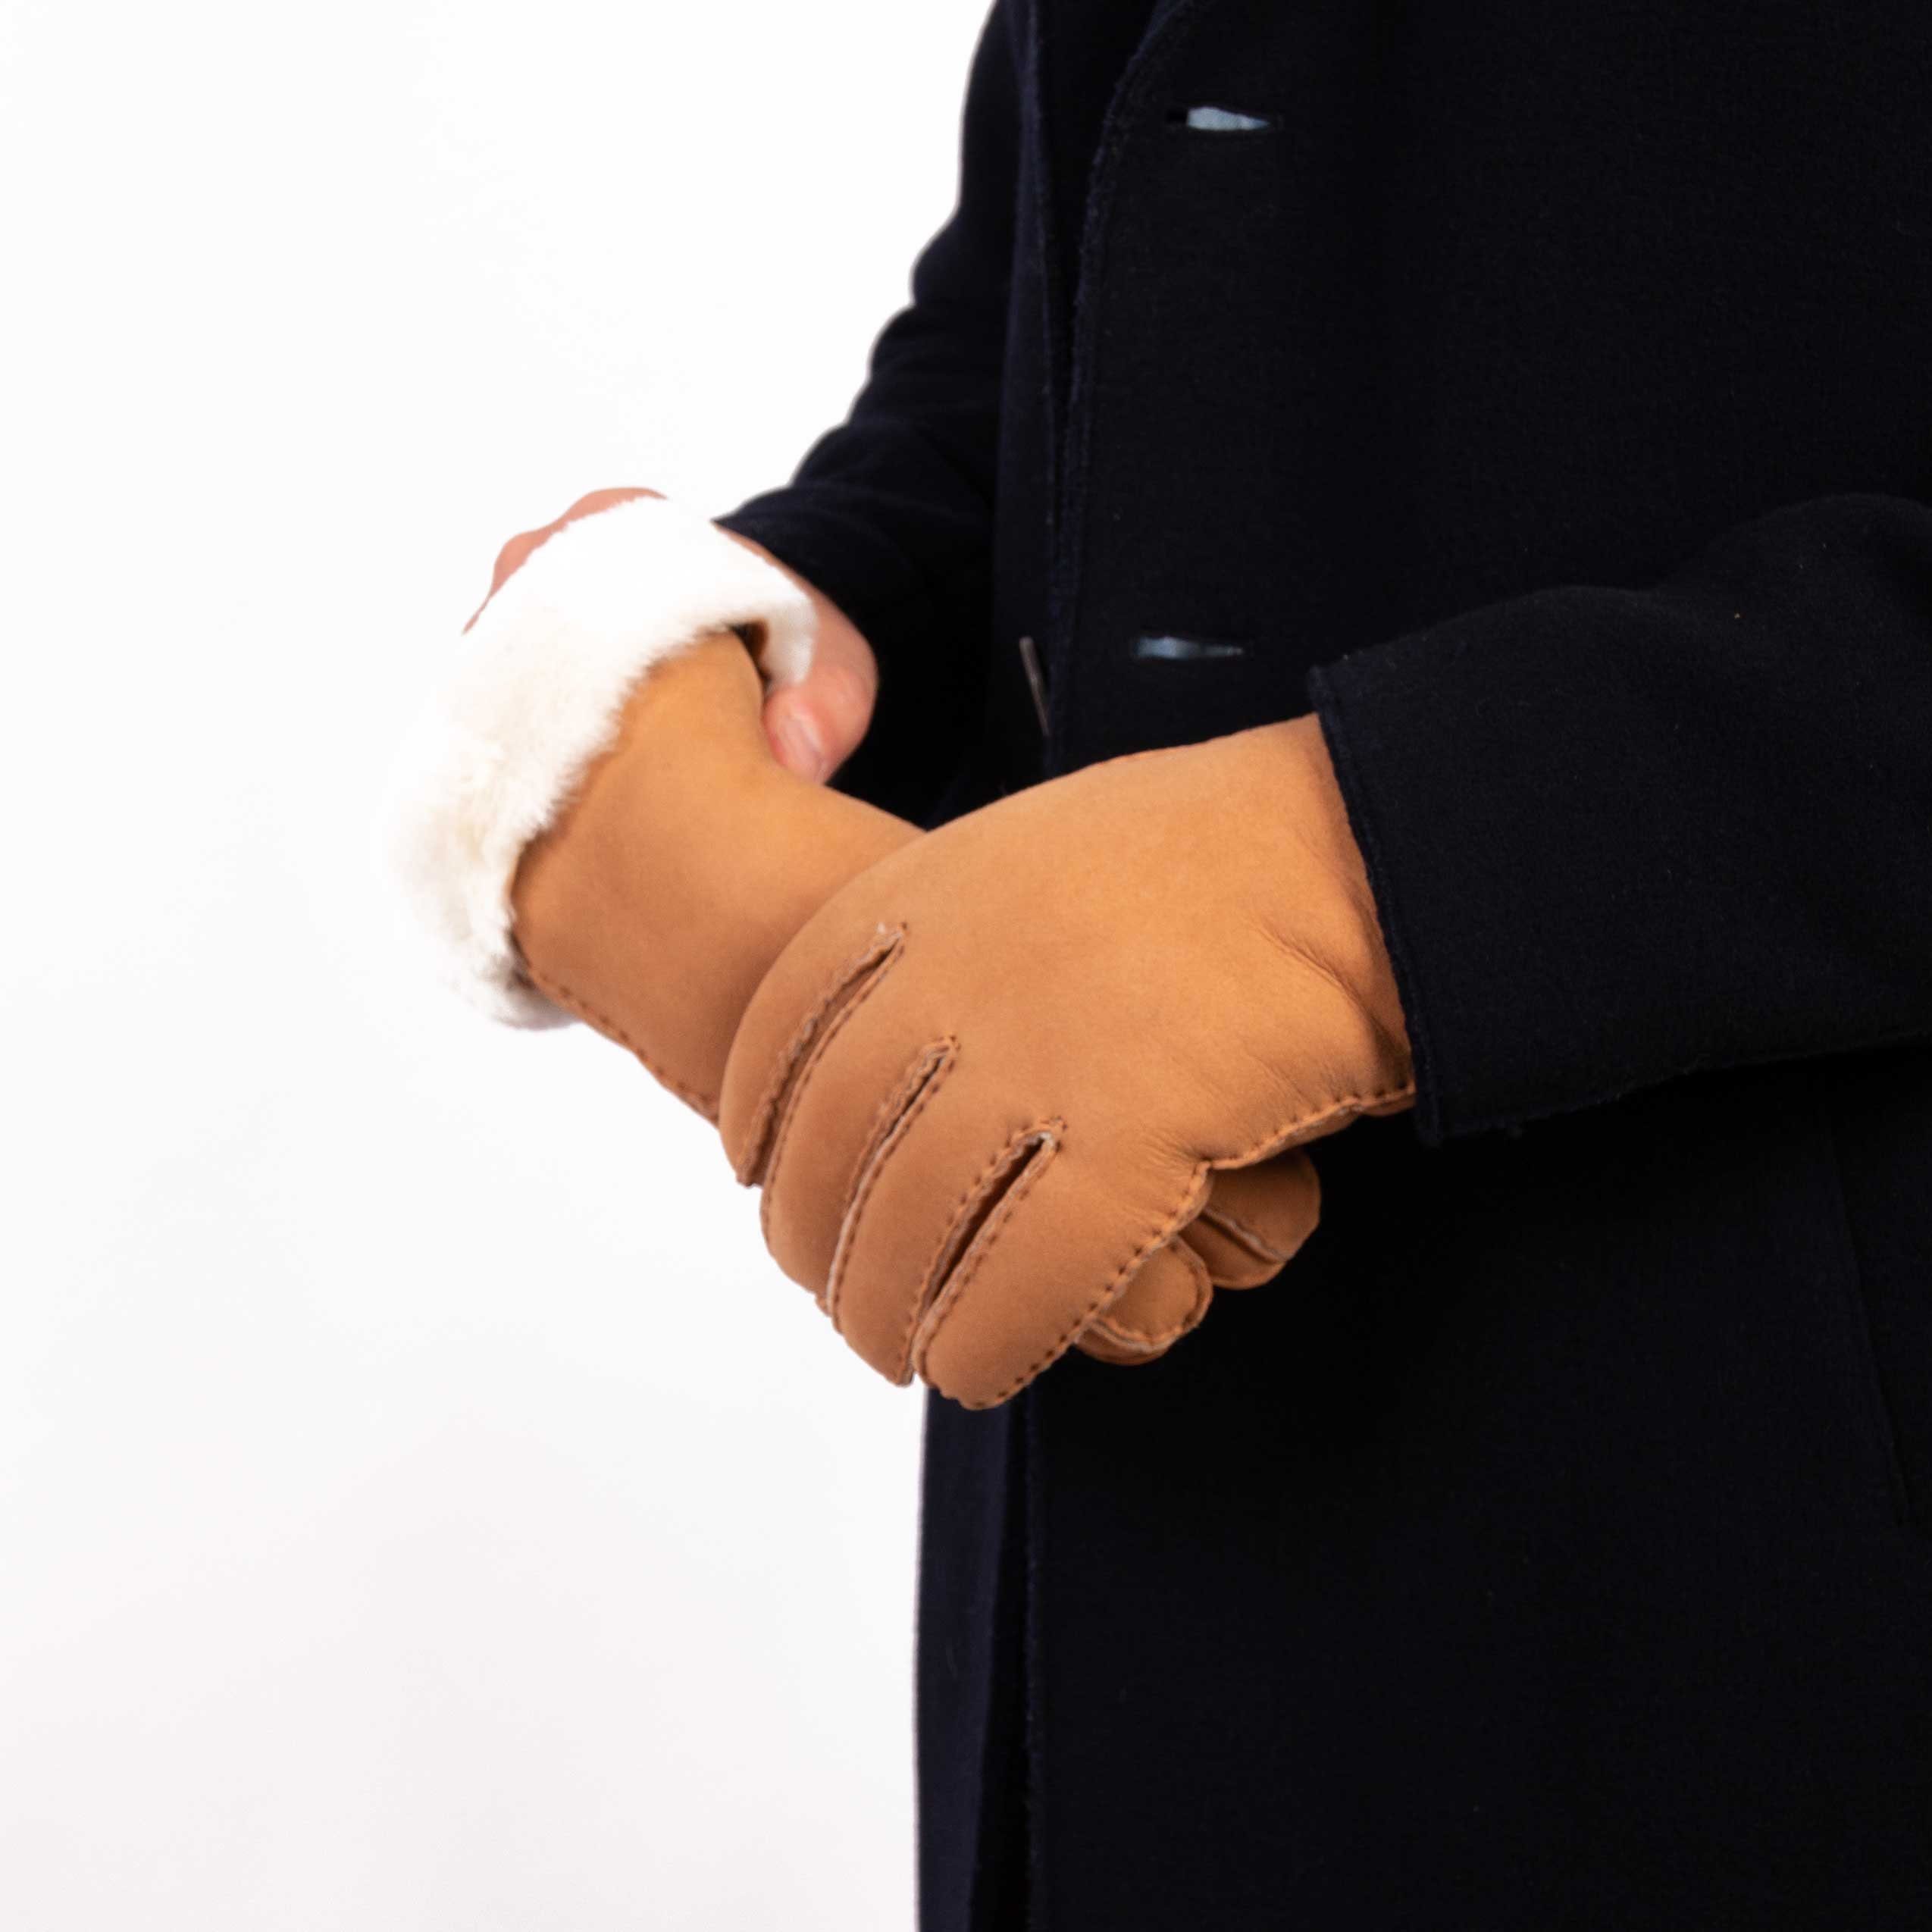 Hand Weikert Gewand aus spanischem Lederhandschuhe by - Natur ADAM Merino-Lammfell Lammfell-Handschuhe